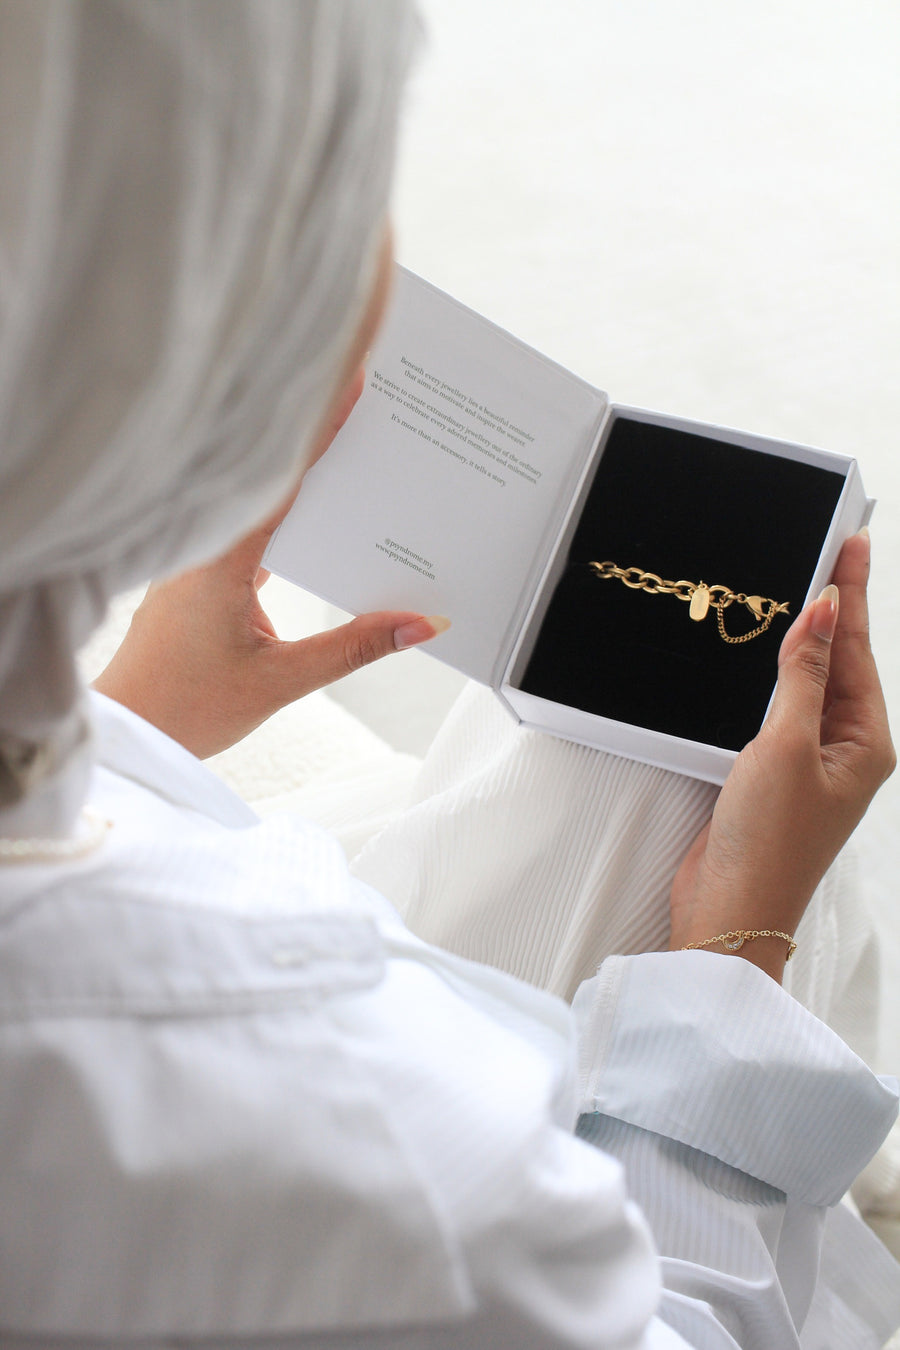 Nova Thick Chain Engravable Gold Bracelet